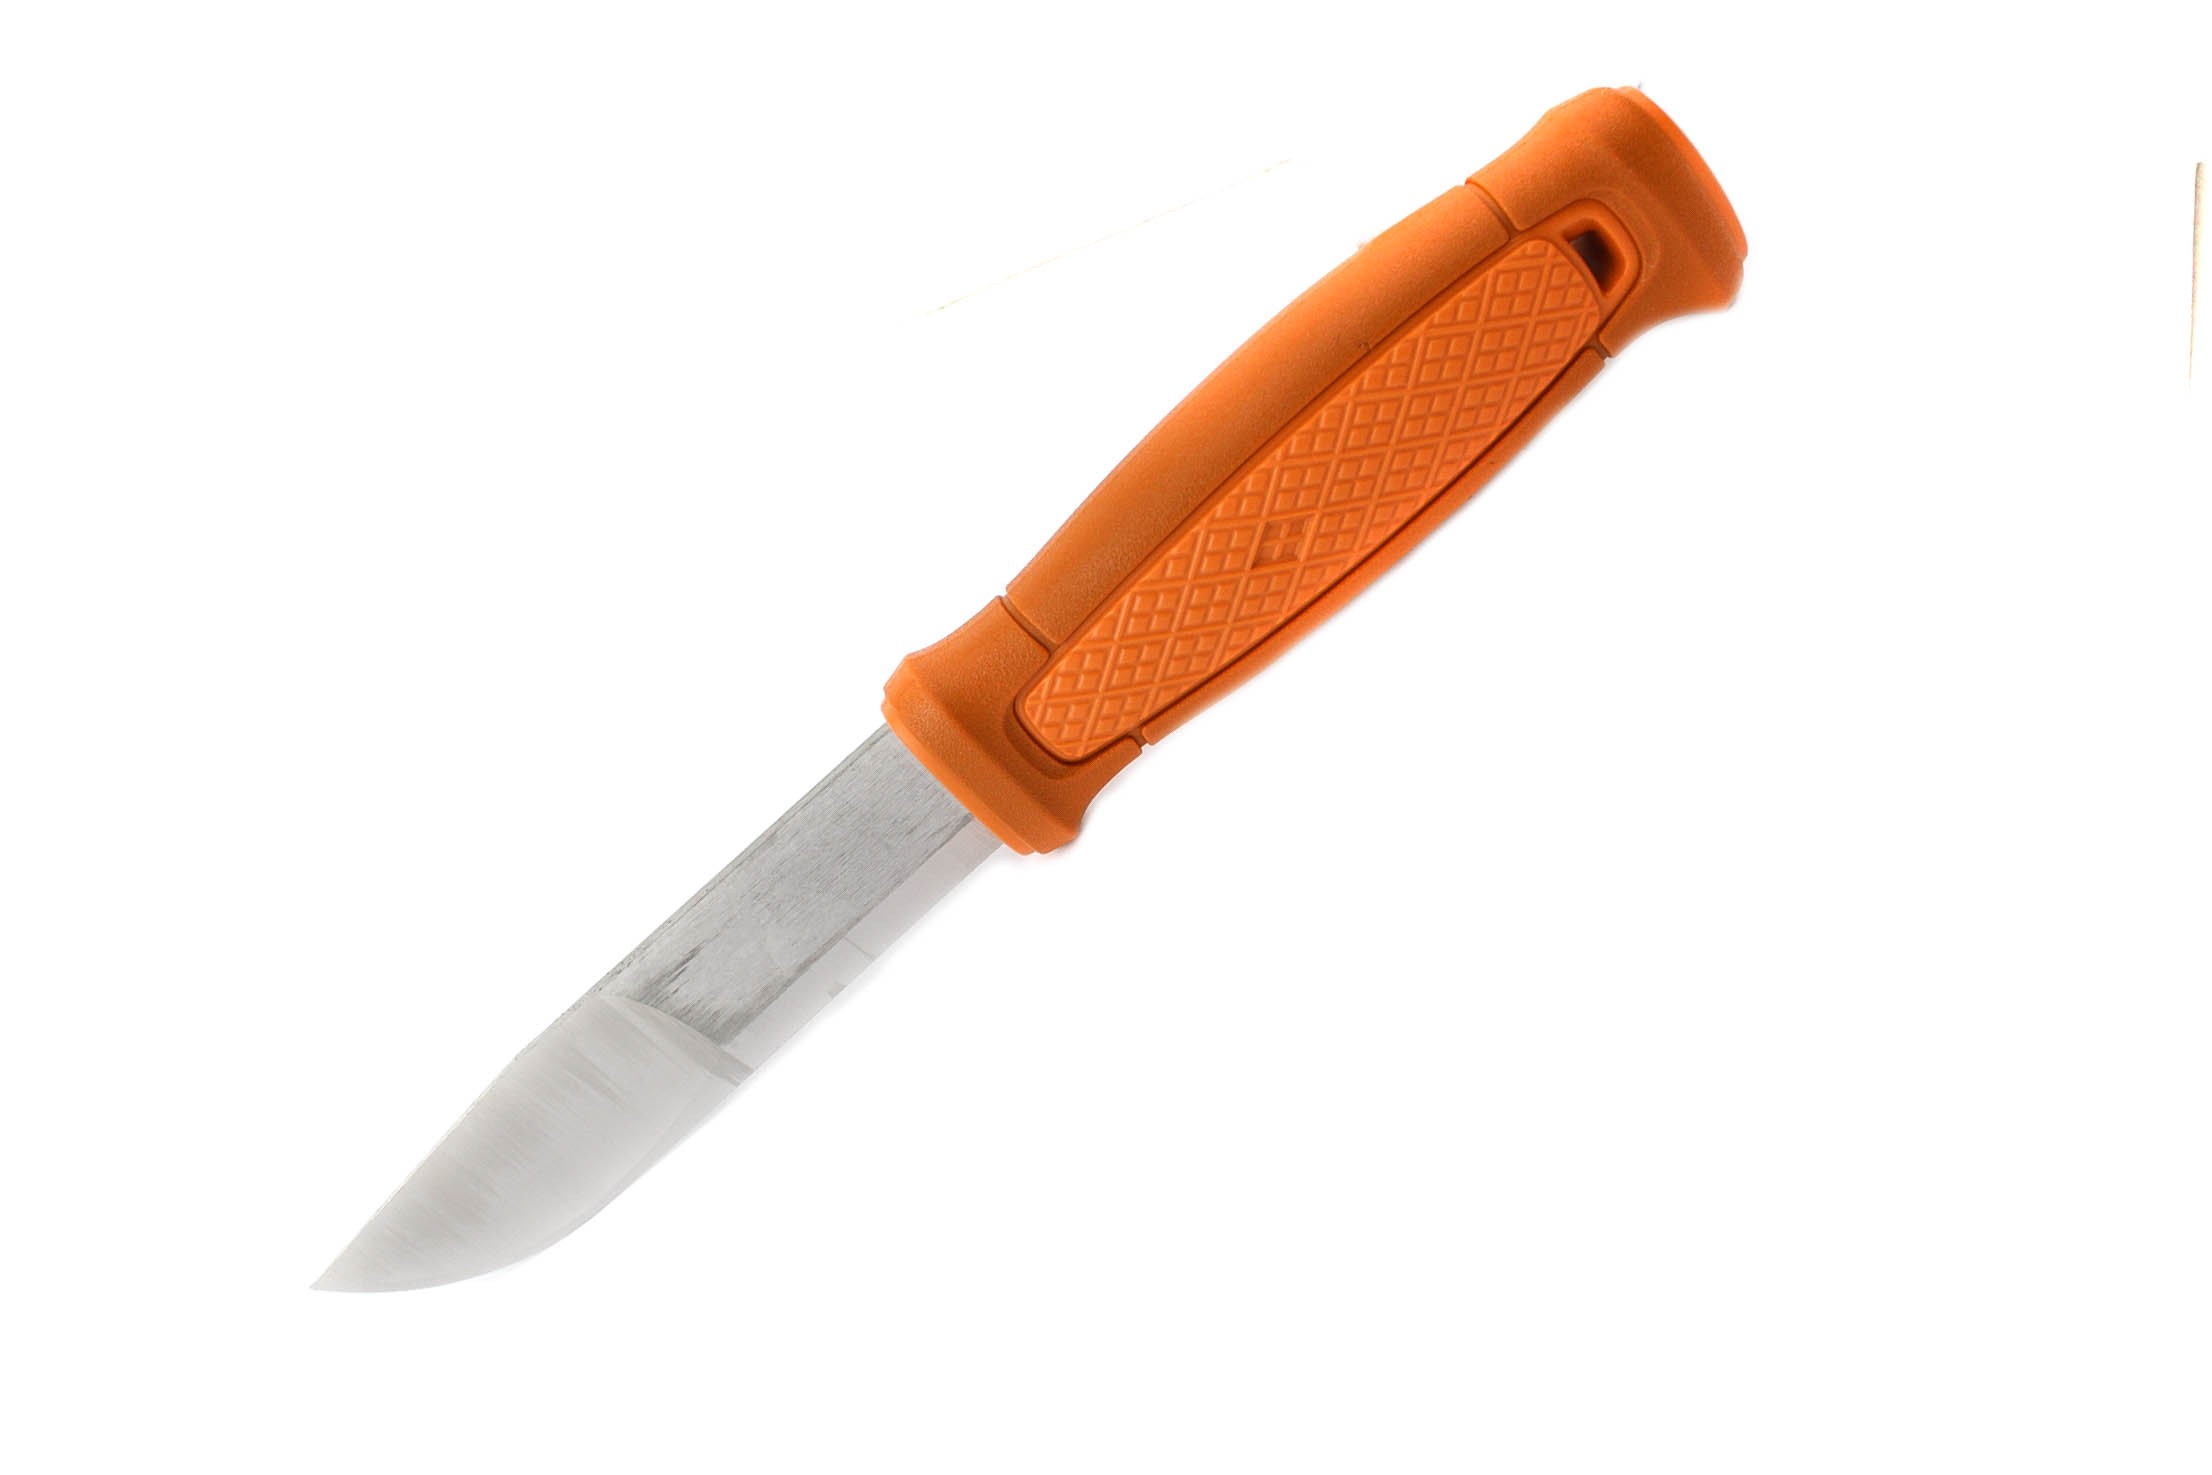 Нож Mora Kansbol burnt orange с мульти креплением - фото 1